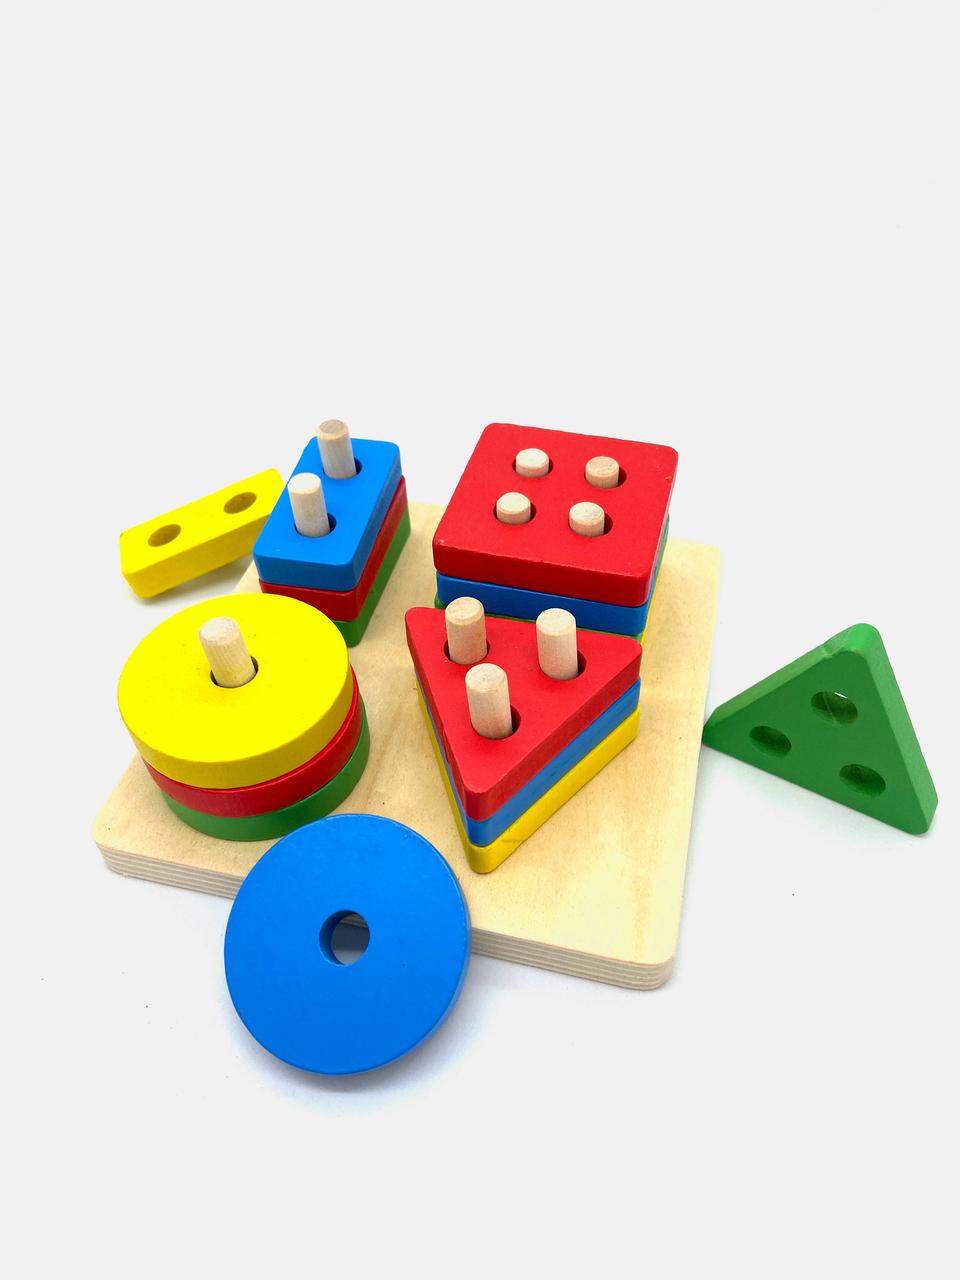 Развивающая деревянная игрушка с геометрическими фигурами, сортер, монтессори